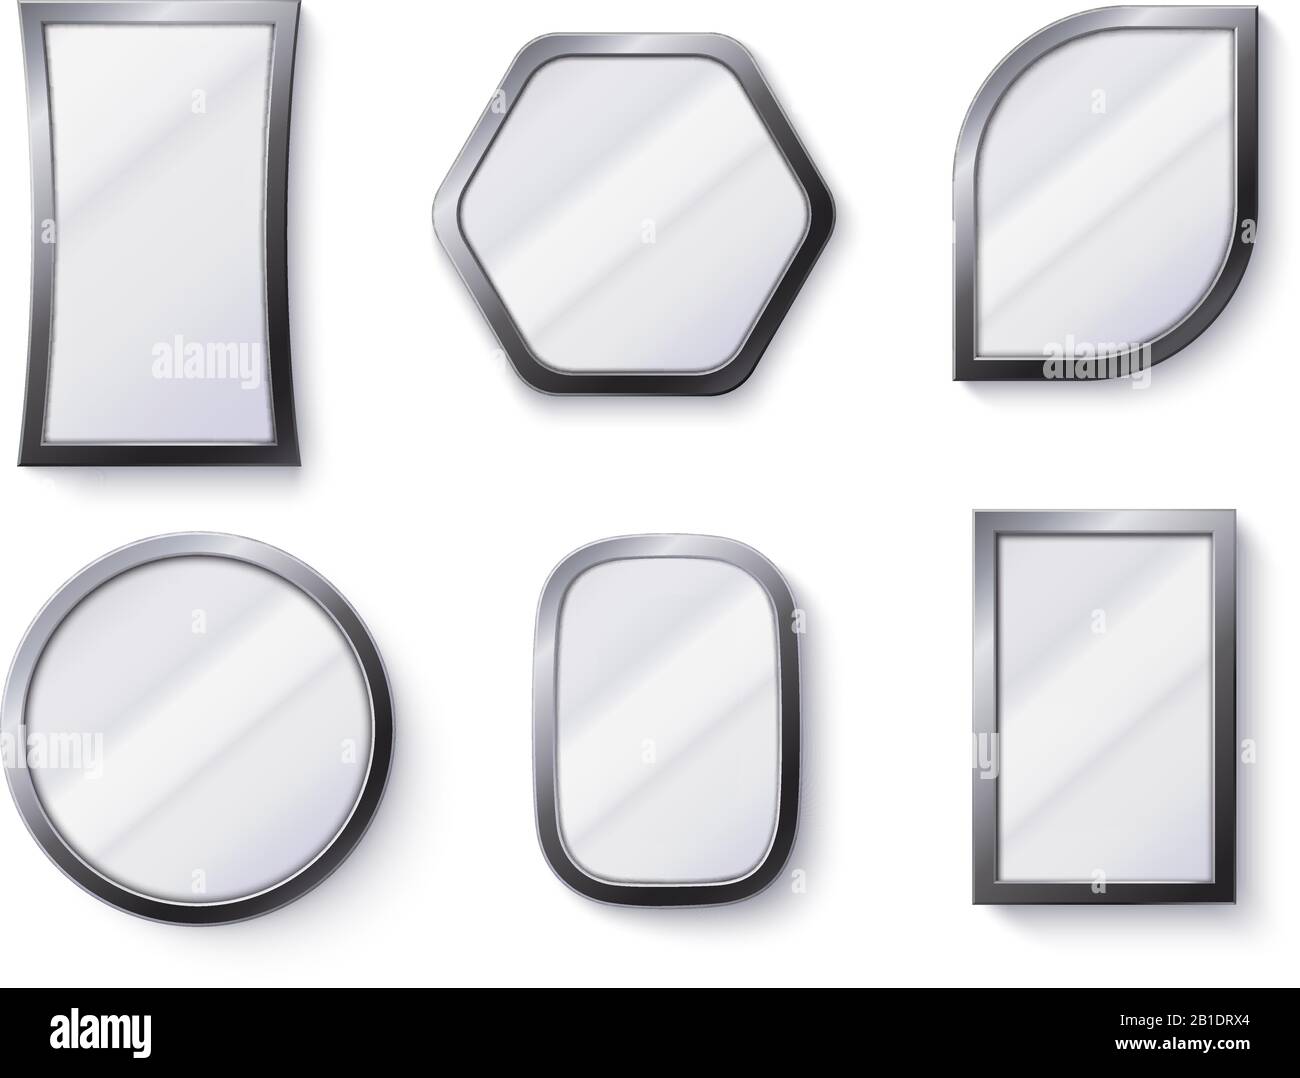 Realistische Spiegel. Reflektierende Spiegelfläche im Rahmen, Spiegelglas und 3D-isolierte Vektorgrafiken mit Rundspiegel Stock Vektor